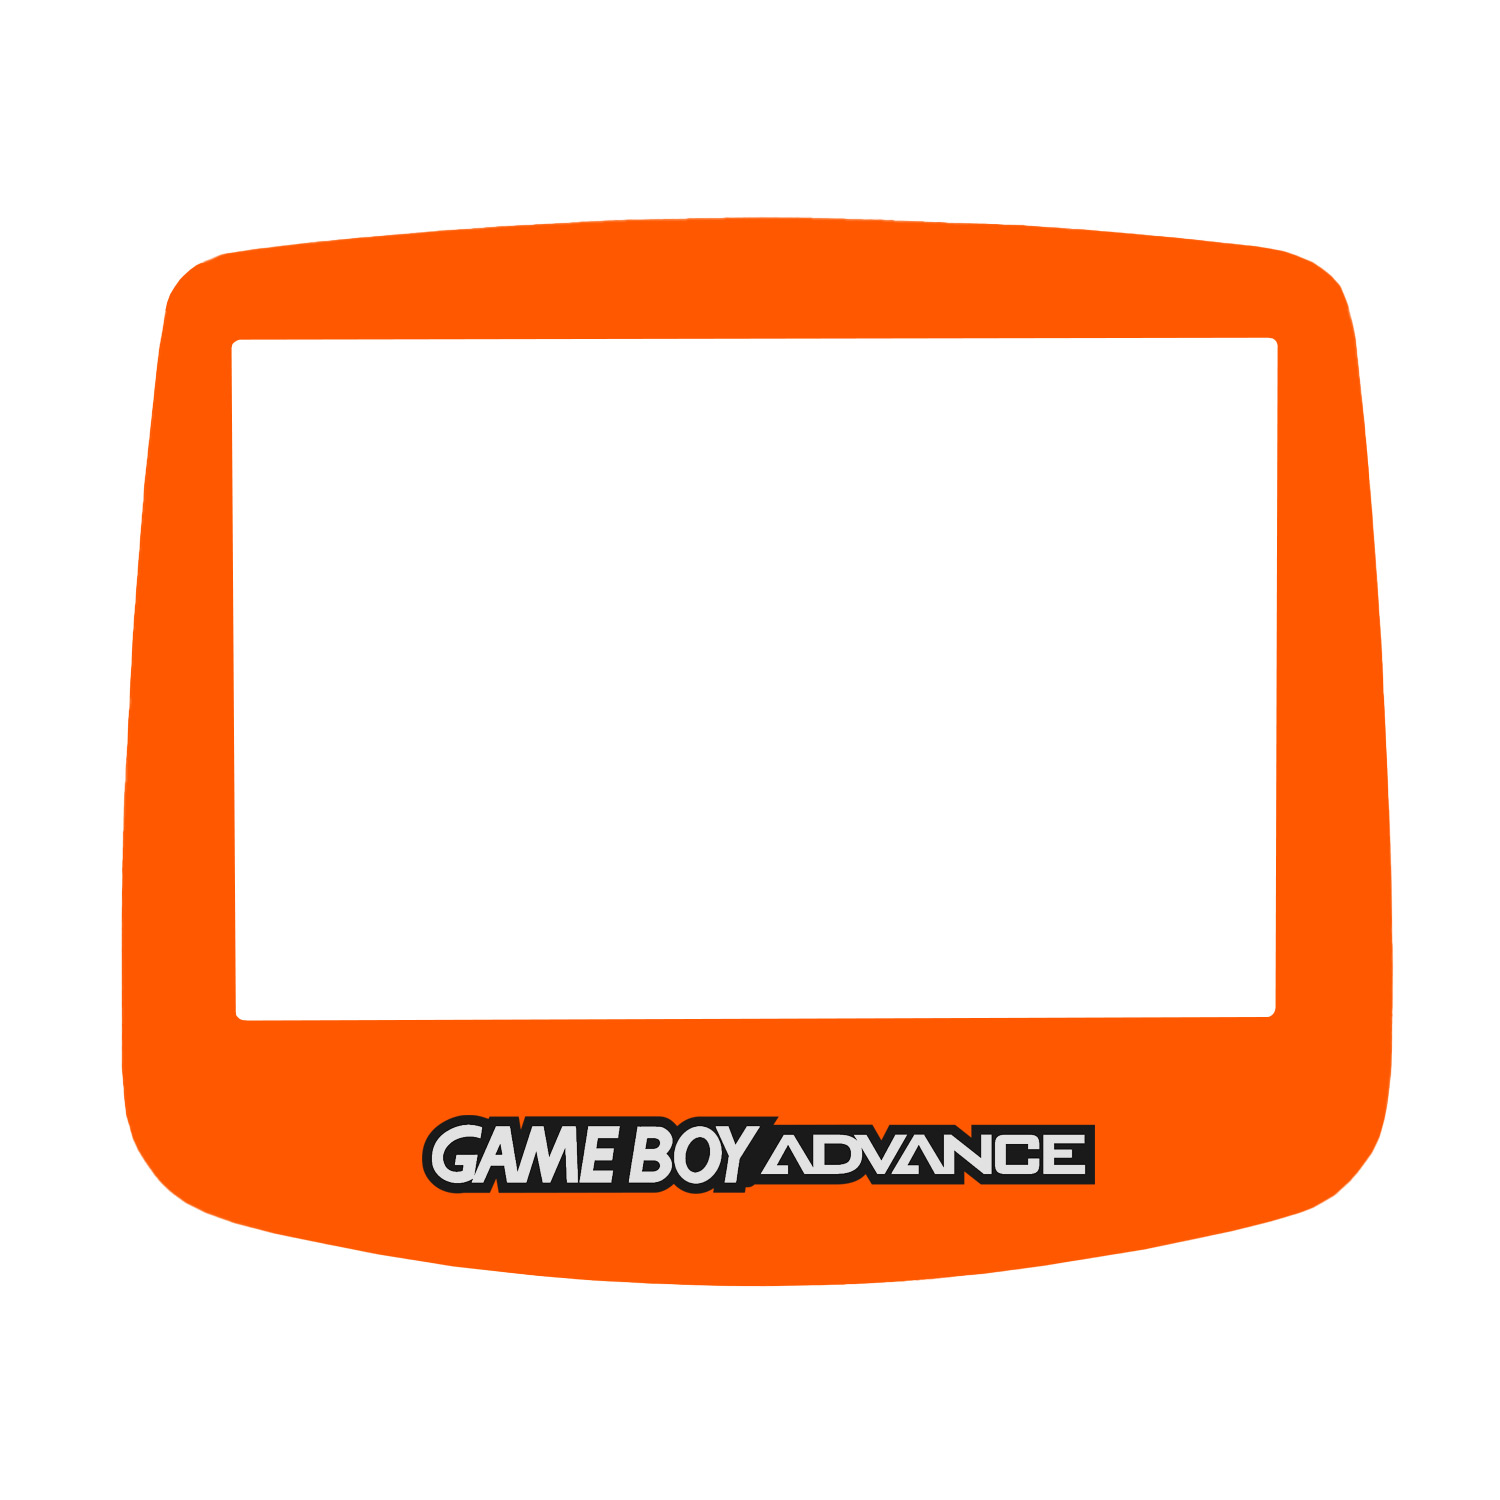 Display Scheibe (Orange) für Game Boy Advance